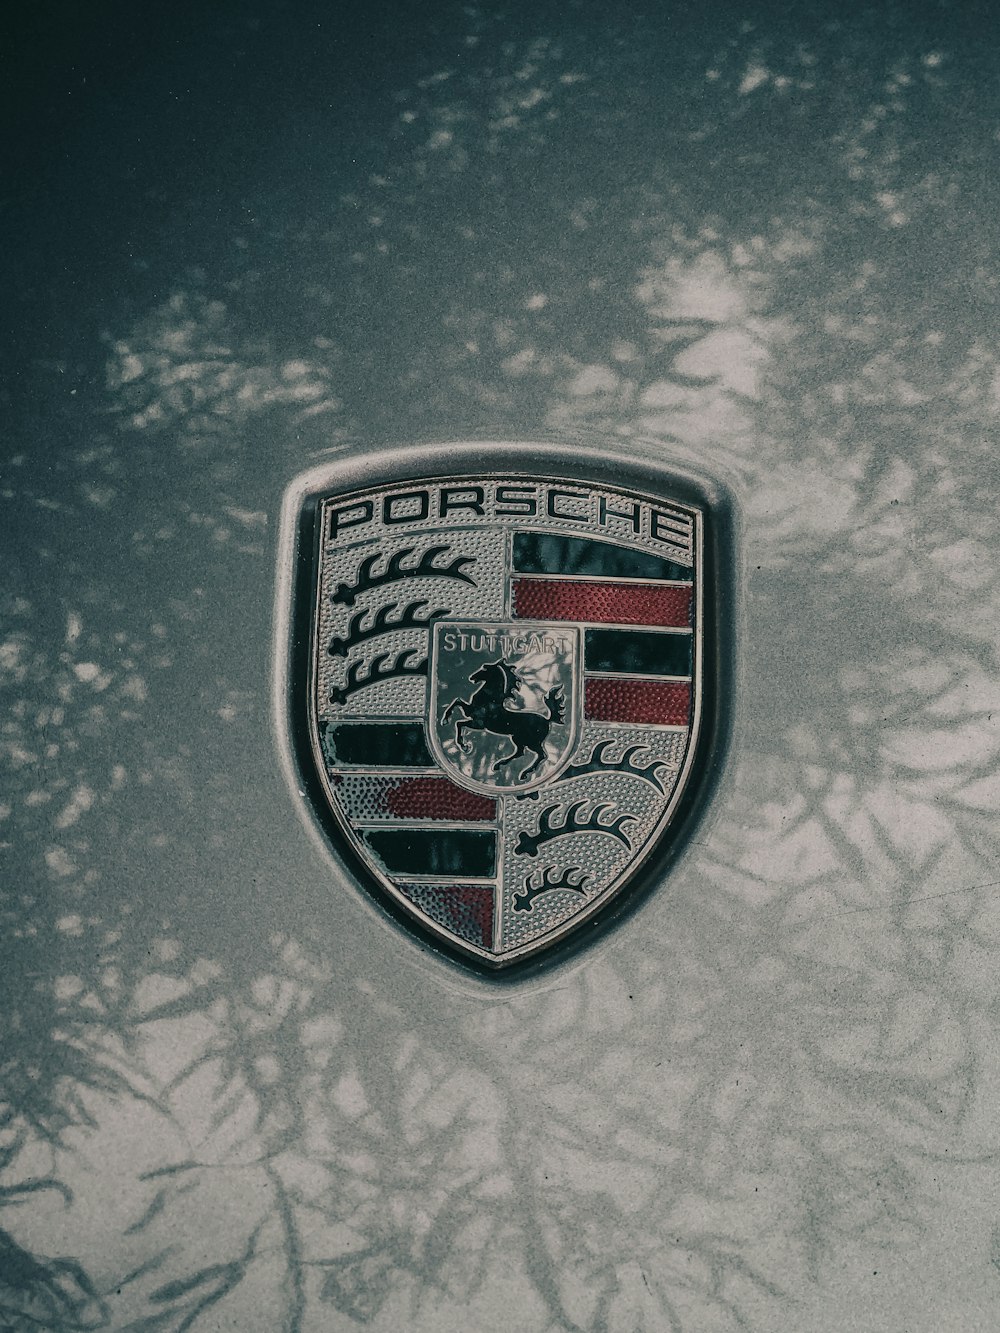 a porsche emblem is shown on a car